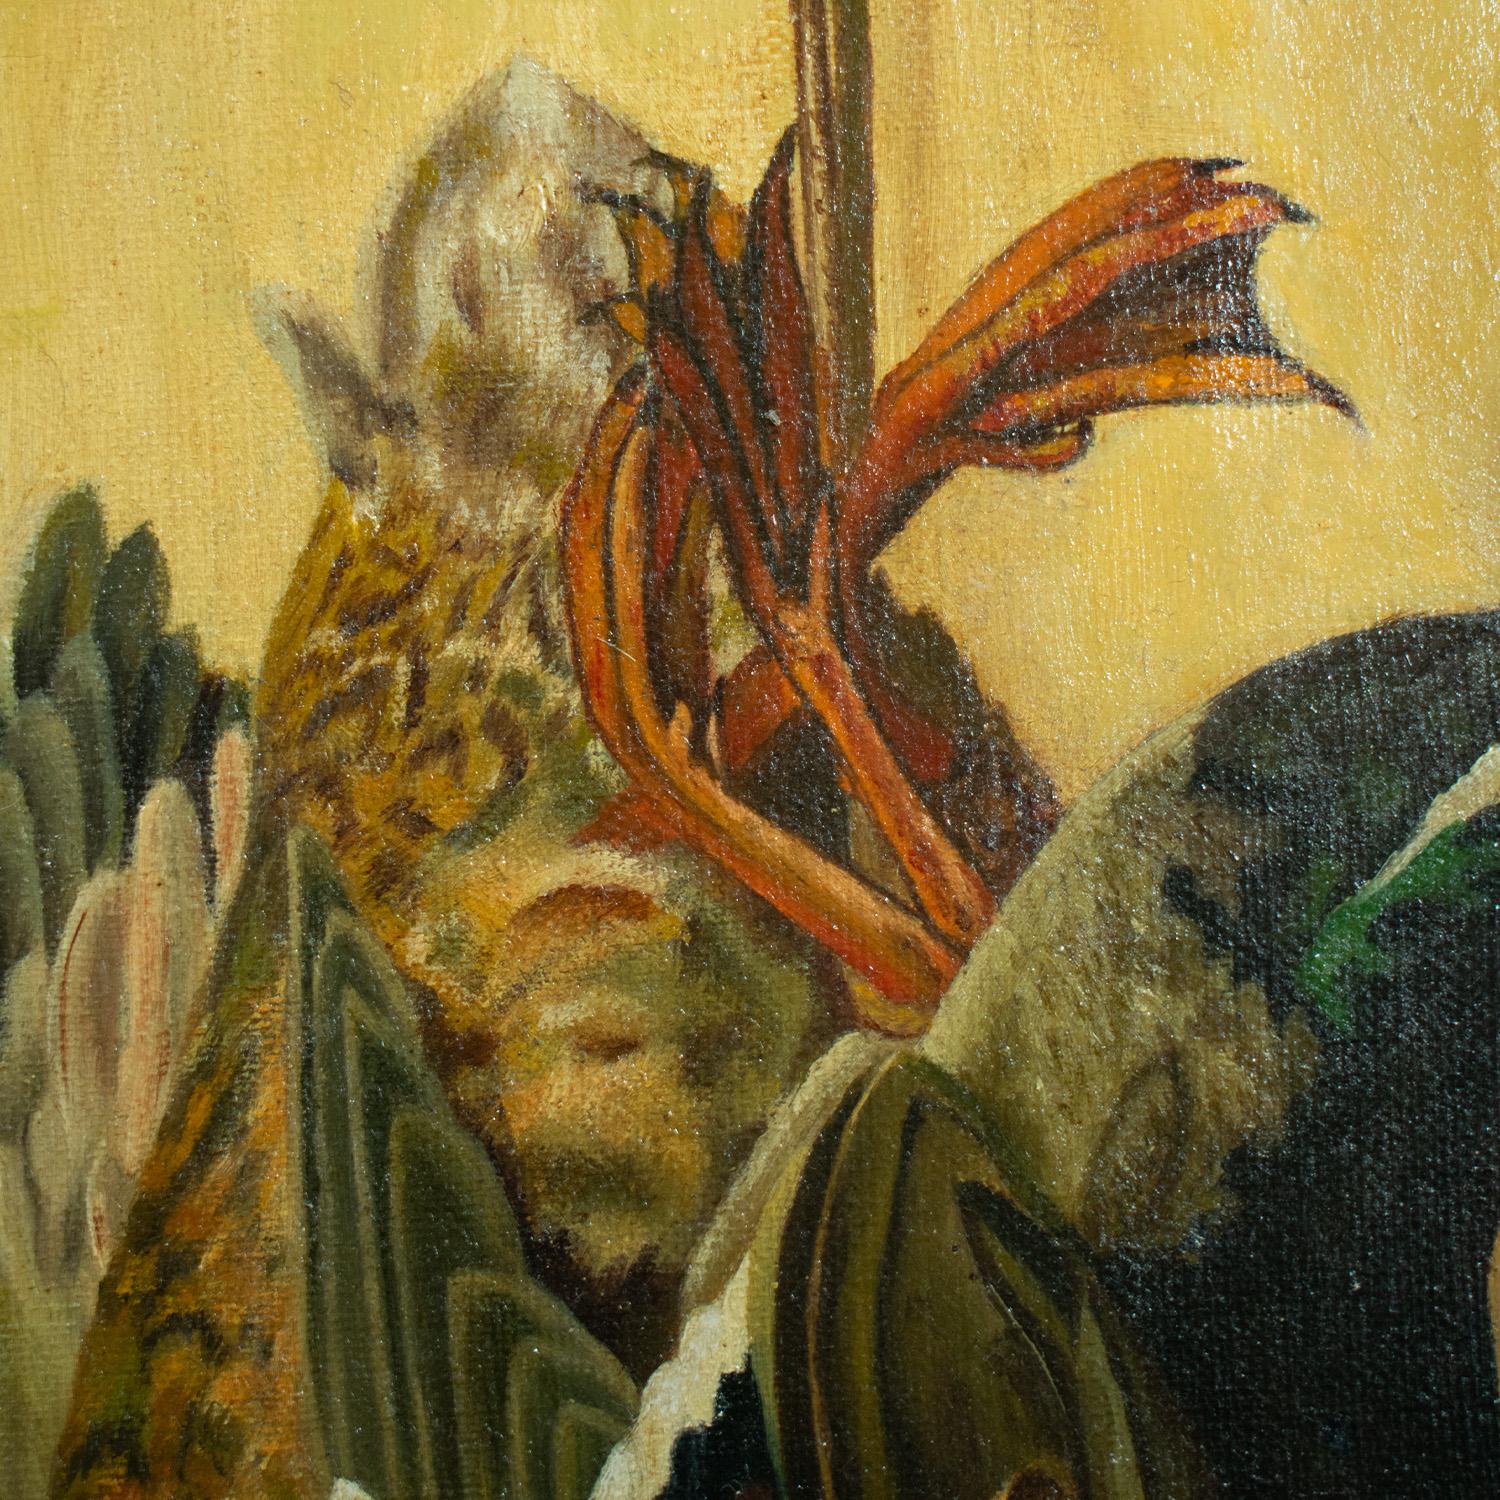 Paire de natures mortes à l'huile sur toile, en trompe l'Oeil, encadrées et signées. Circa 1900.

Le sujet est le produit d'une chasse - faisans, perdrix, lièvres et canards représentés artistiquement en trompe-l'Oeil.

Taille de la toile : 30cm x